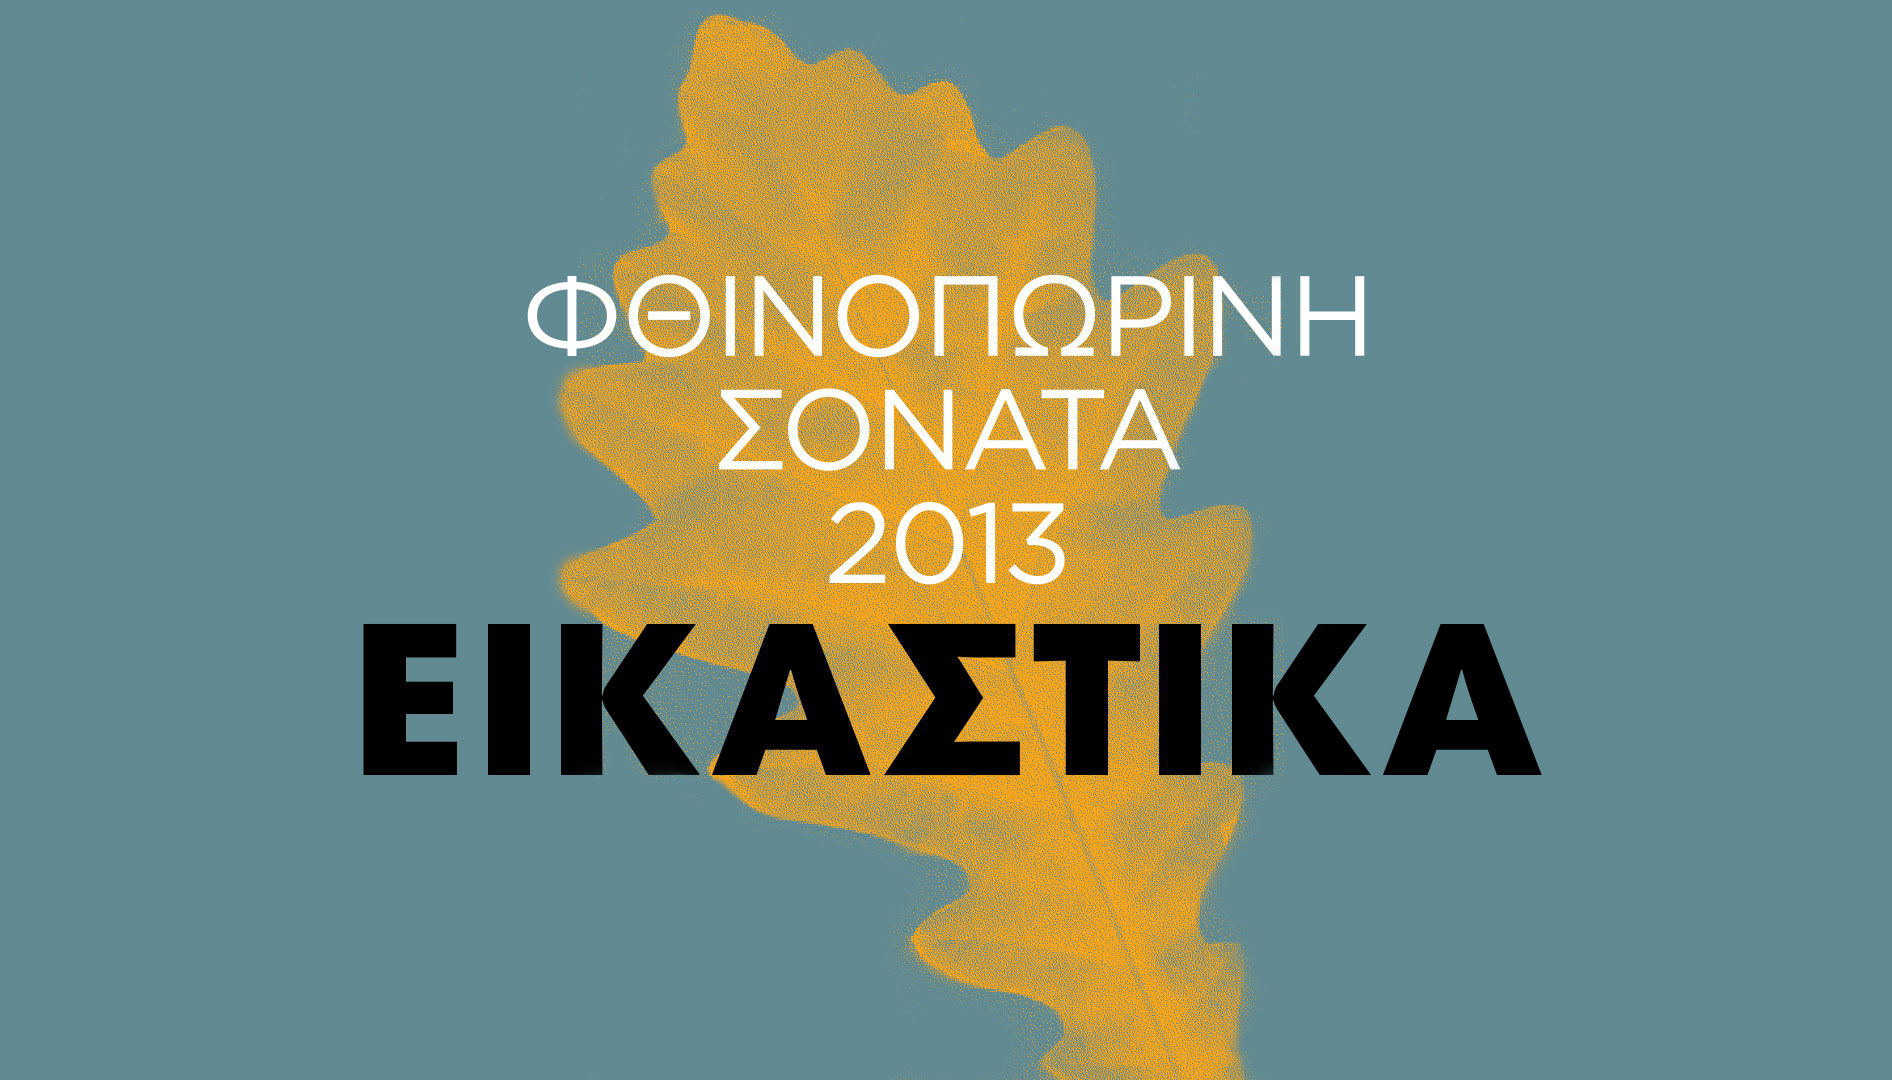 popaganda_ftinoporini sonata_kapakia_eikastika